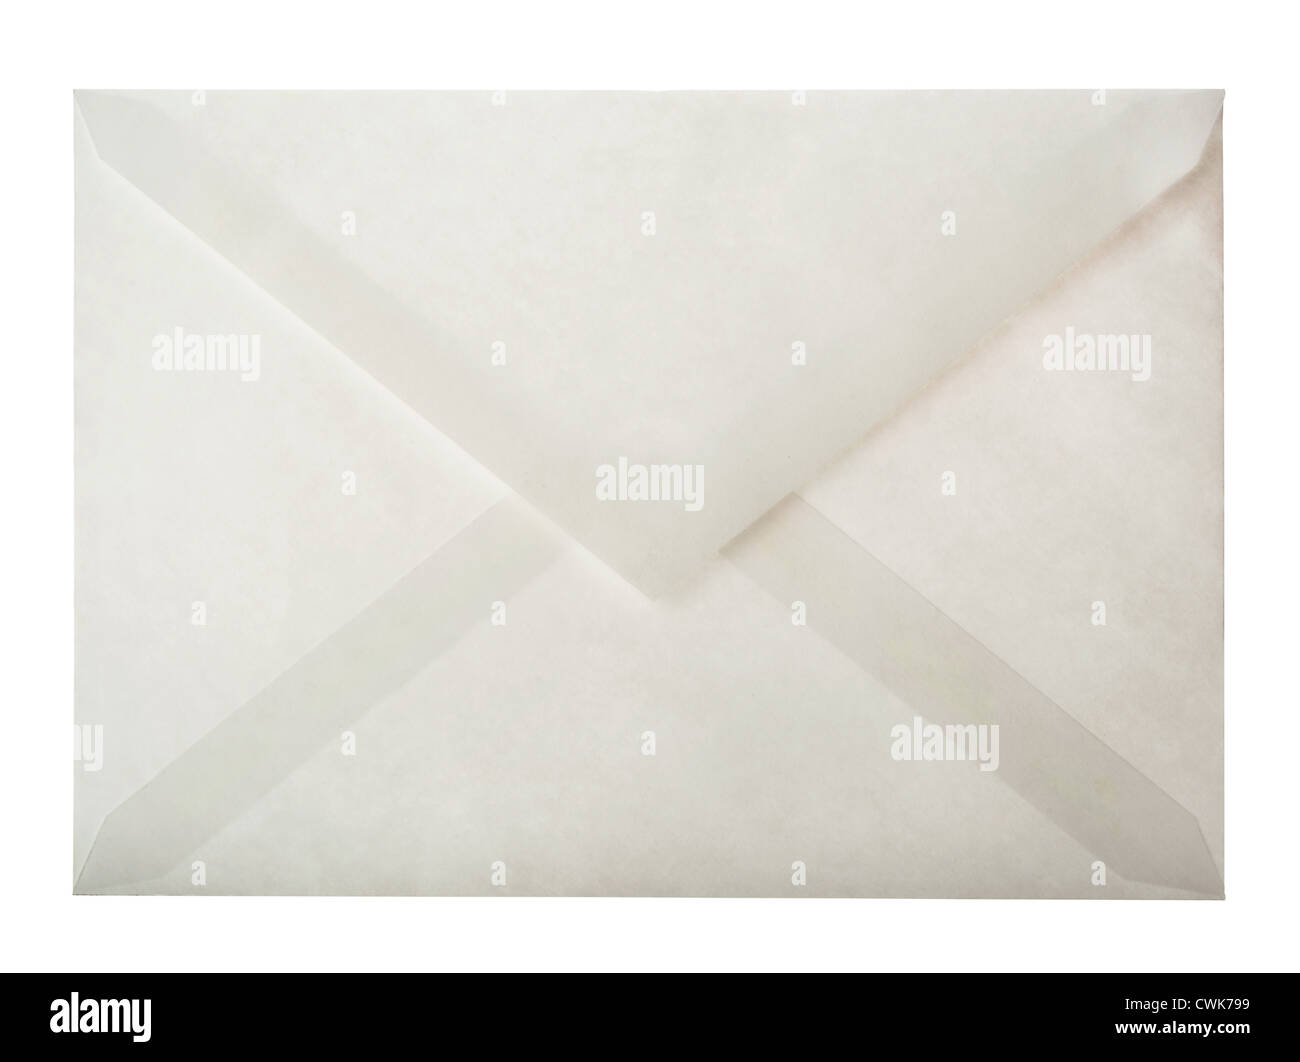 L'arrière de l'enveloppe de papier blanc isolated on white Banque D'Images